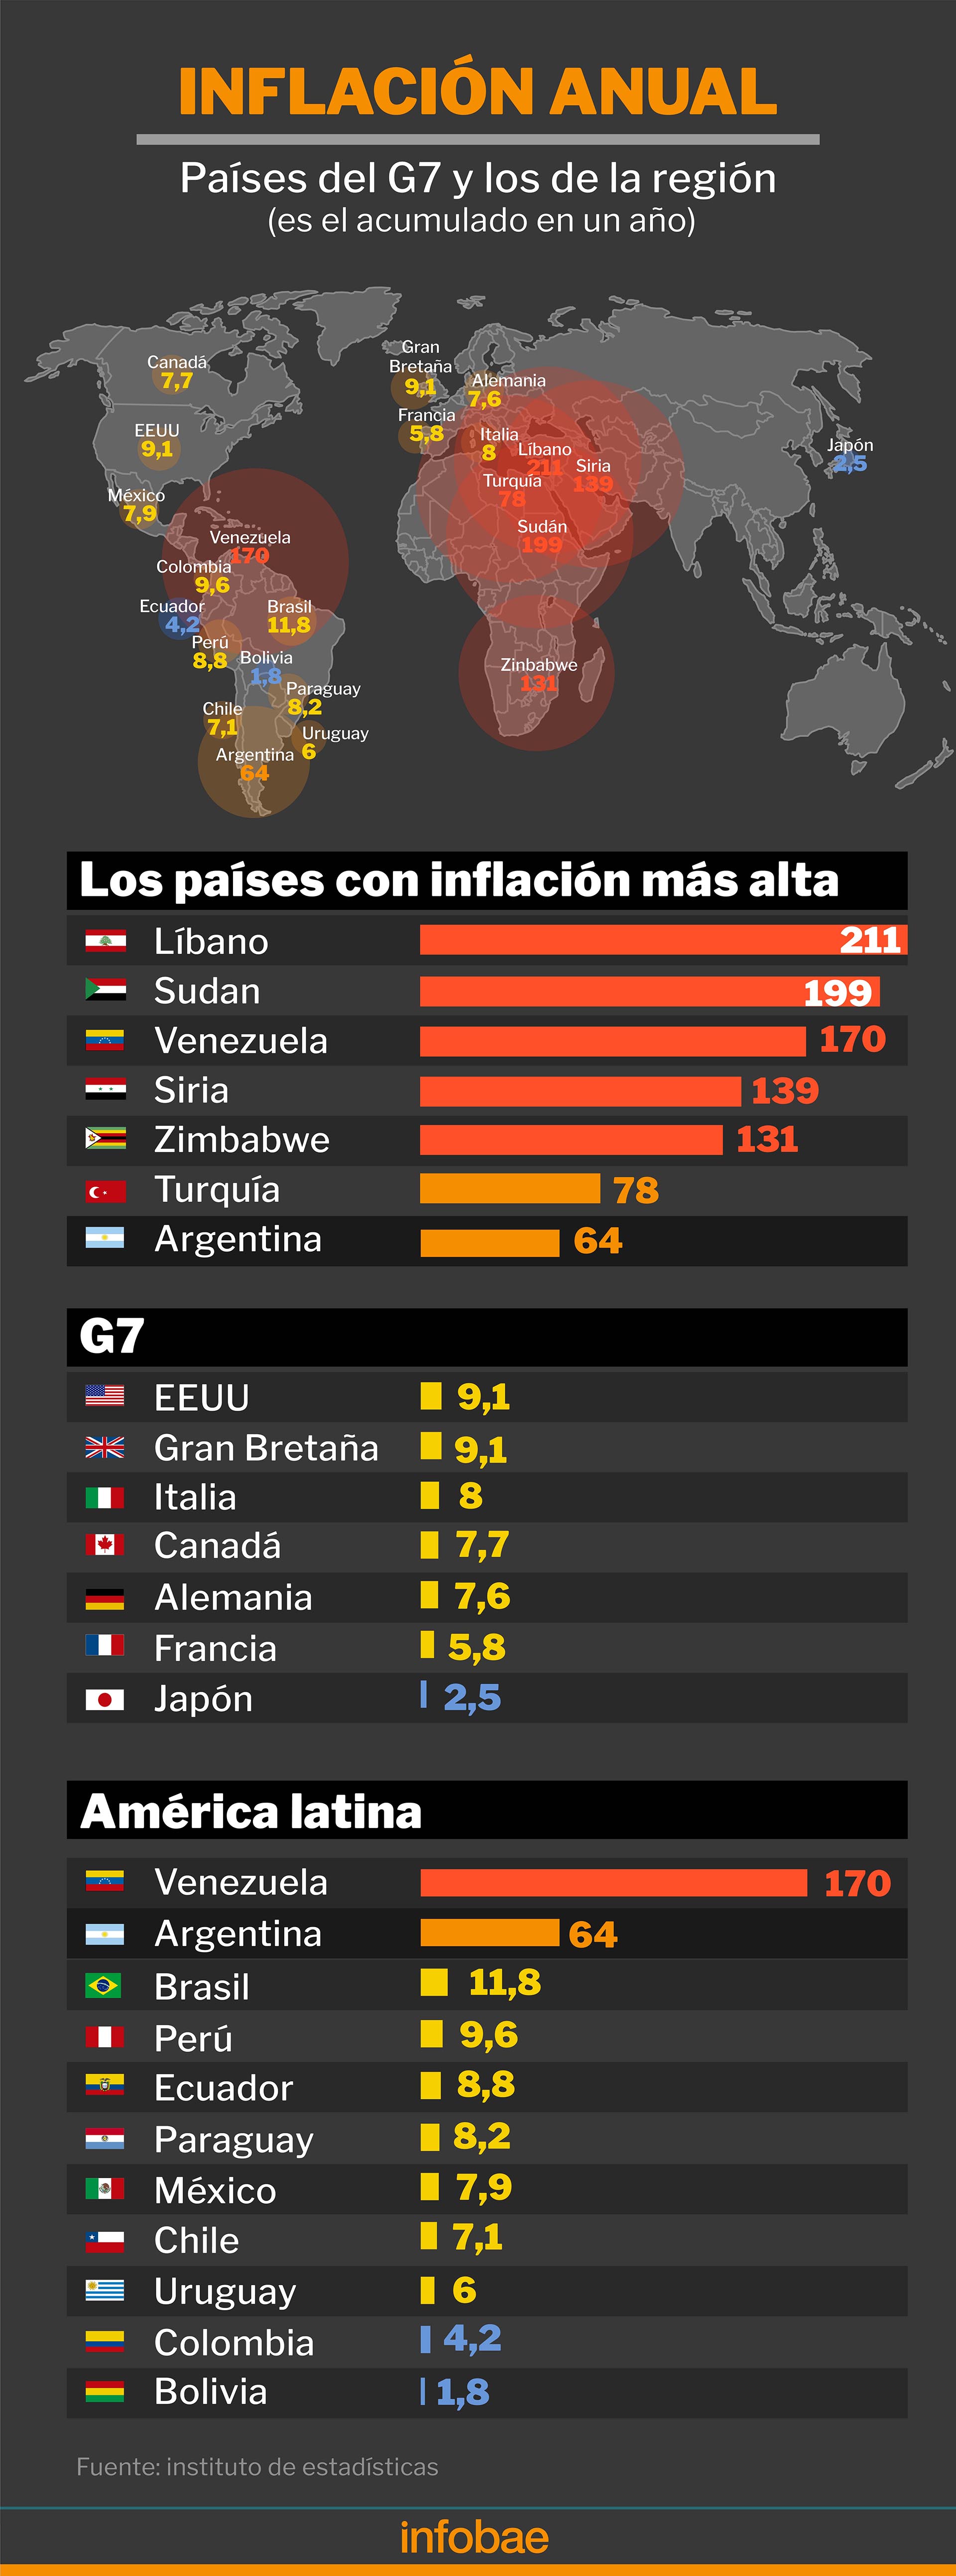 La inflación del último año en los países con mayor suba de precios, el G7 y los de la región
Fuente: Institutos de estadísticas oficiales
Infografía de Marcelo Regalado